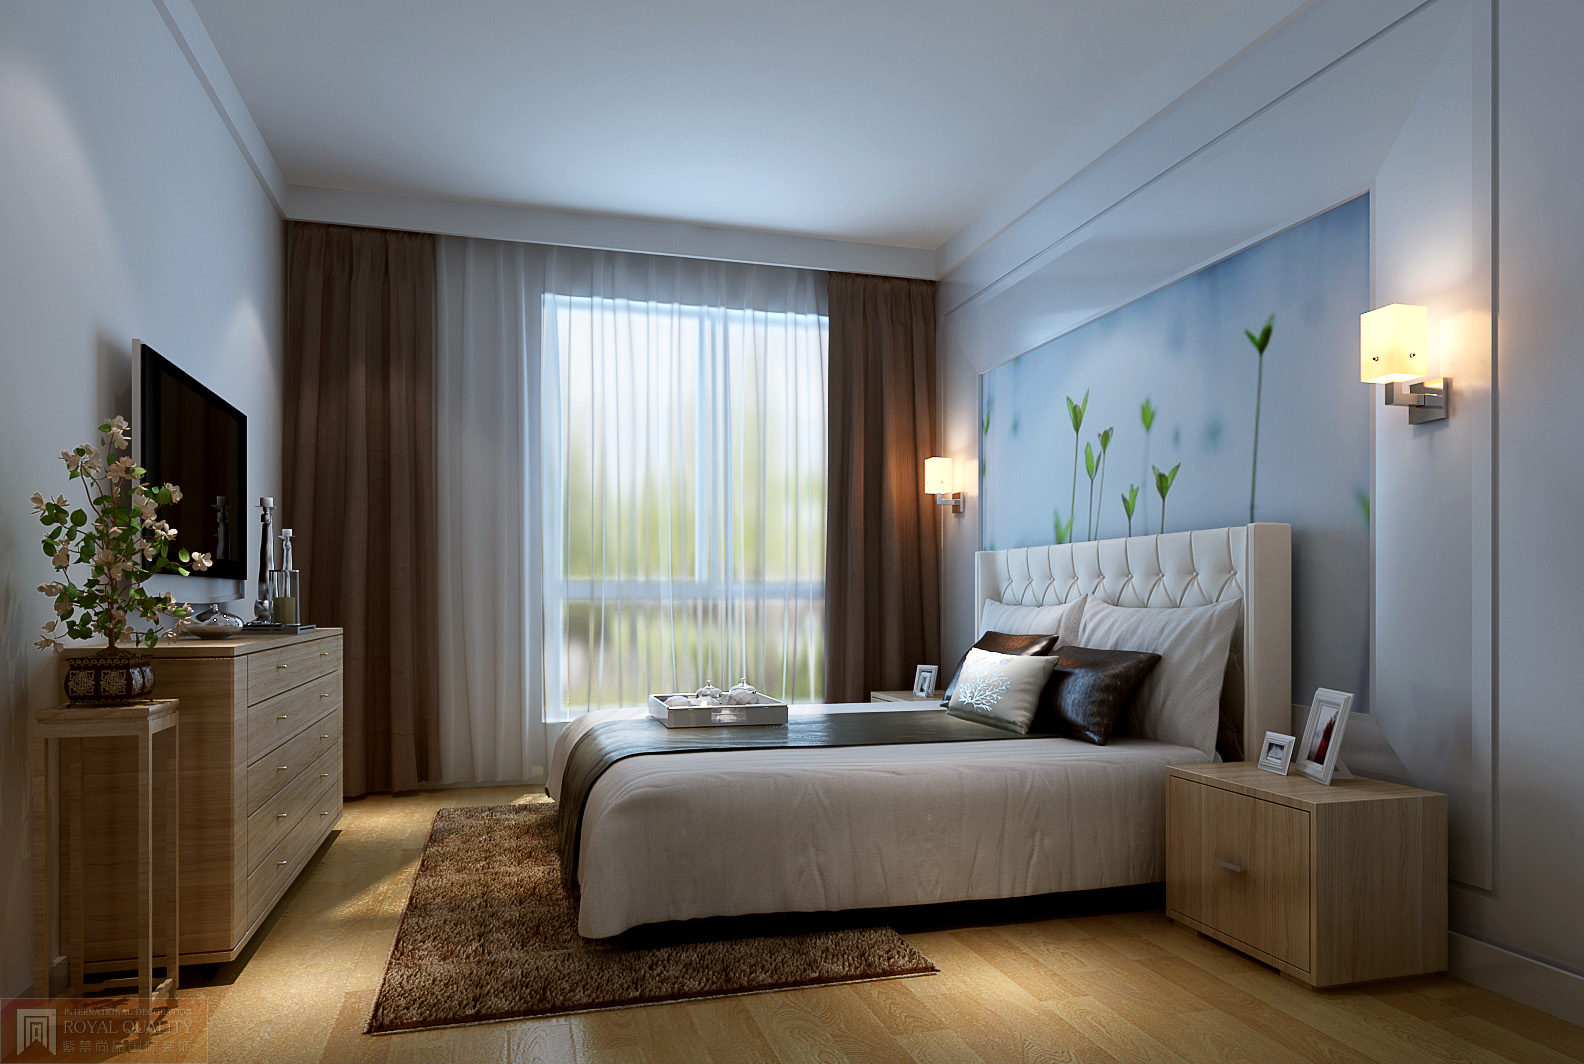 简约 三居 白领 80后 小资 卧室图片来自北京装修设计o在简洁明亮大方的现代简约风格的分享